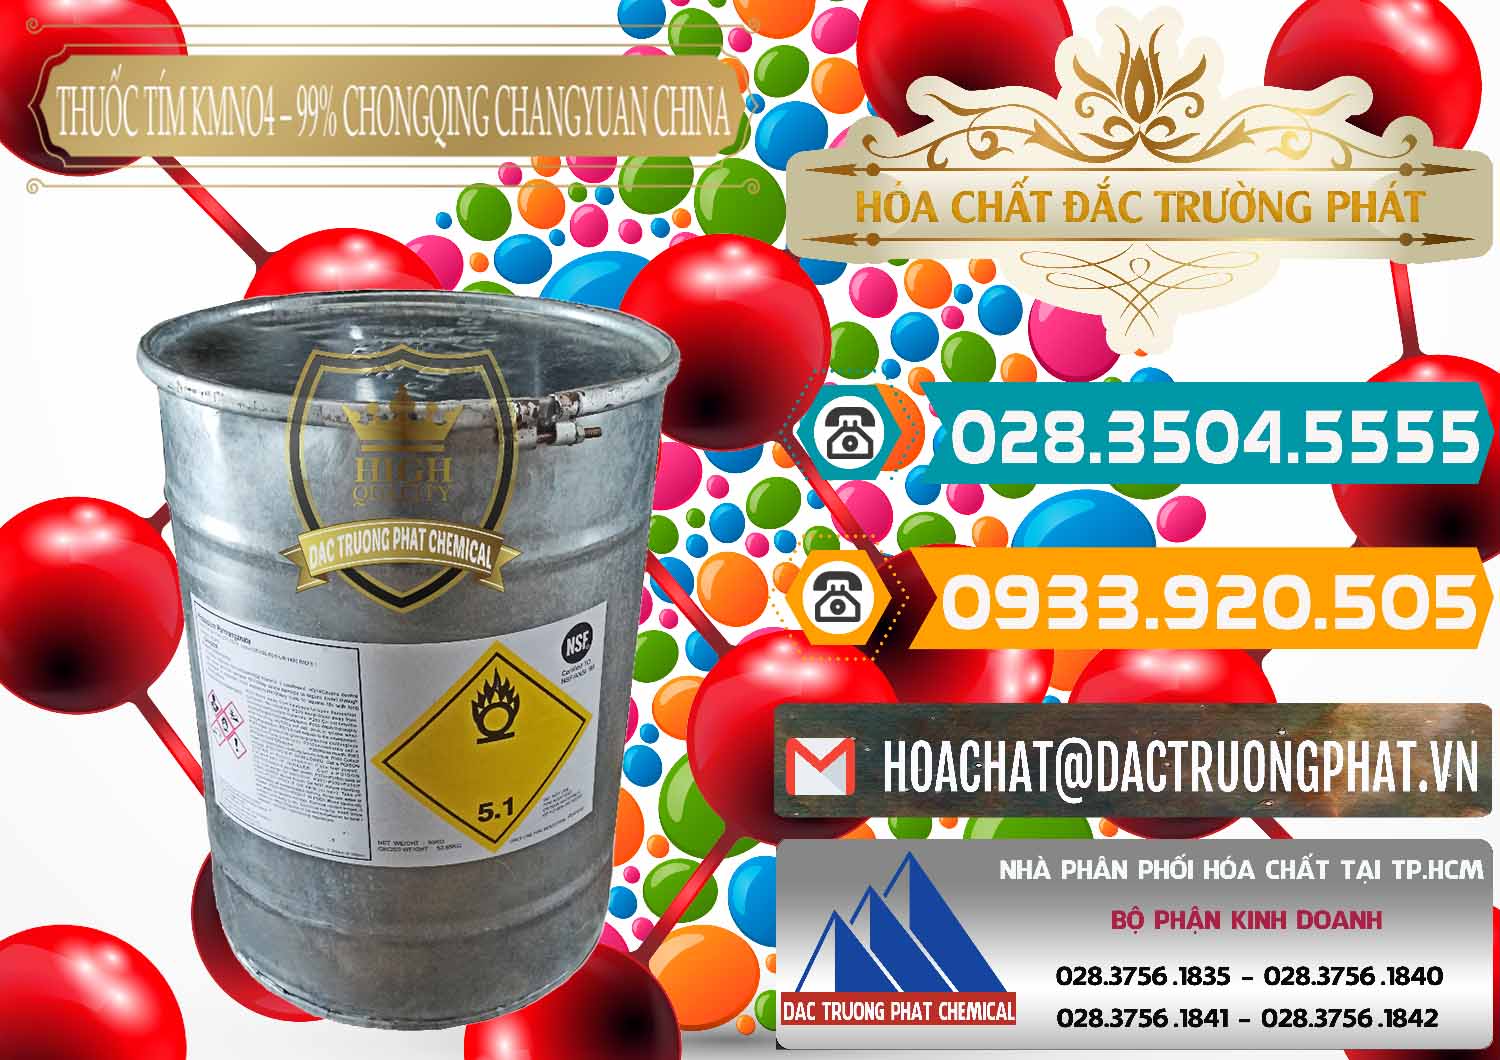 Công ty chuyên phân phối _ bán Thuốc Tím – KMNO4 99% Chongqing Changyuan Trung Quốc China - 0166 - Nơi phân phối _ cung ứng hóa chất tại TP.HCM - congtyhoachat.vn